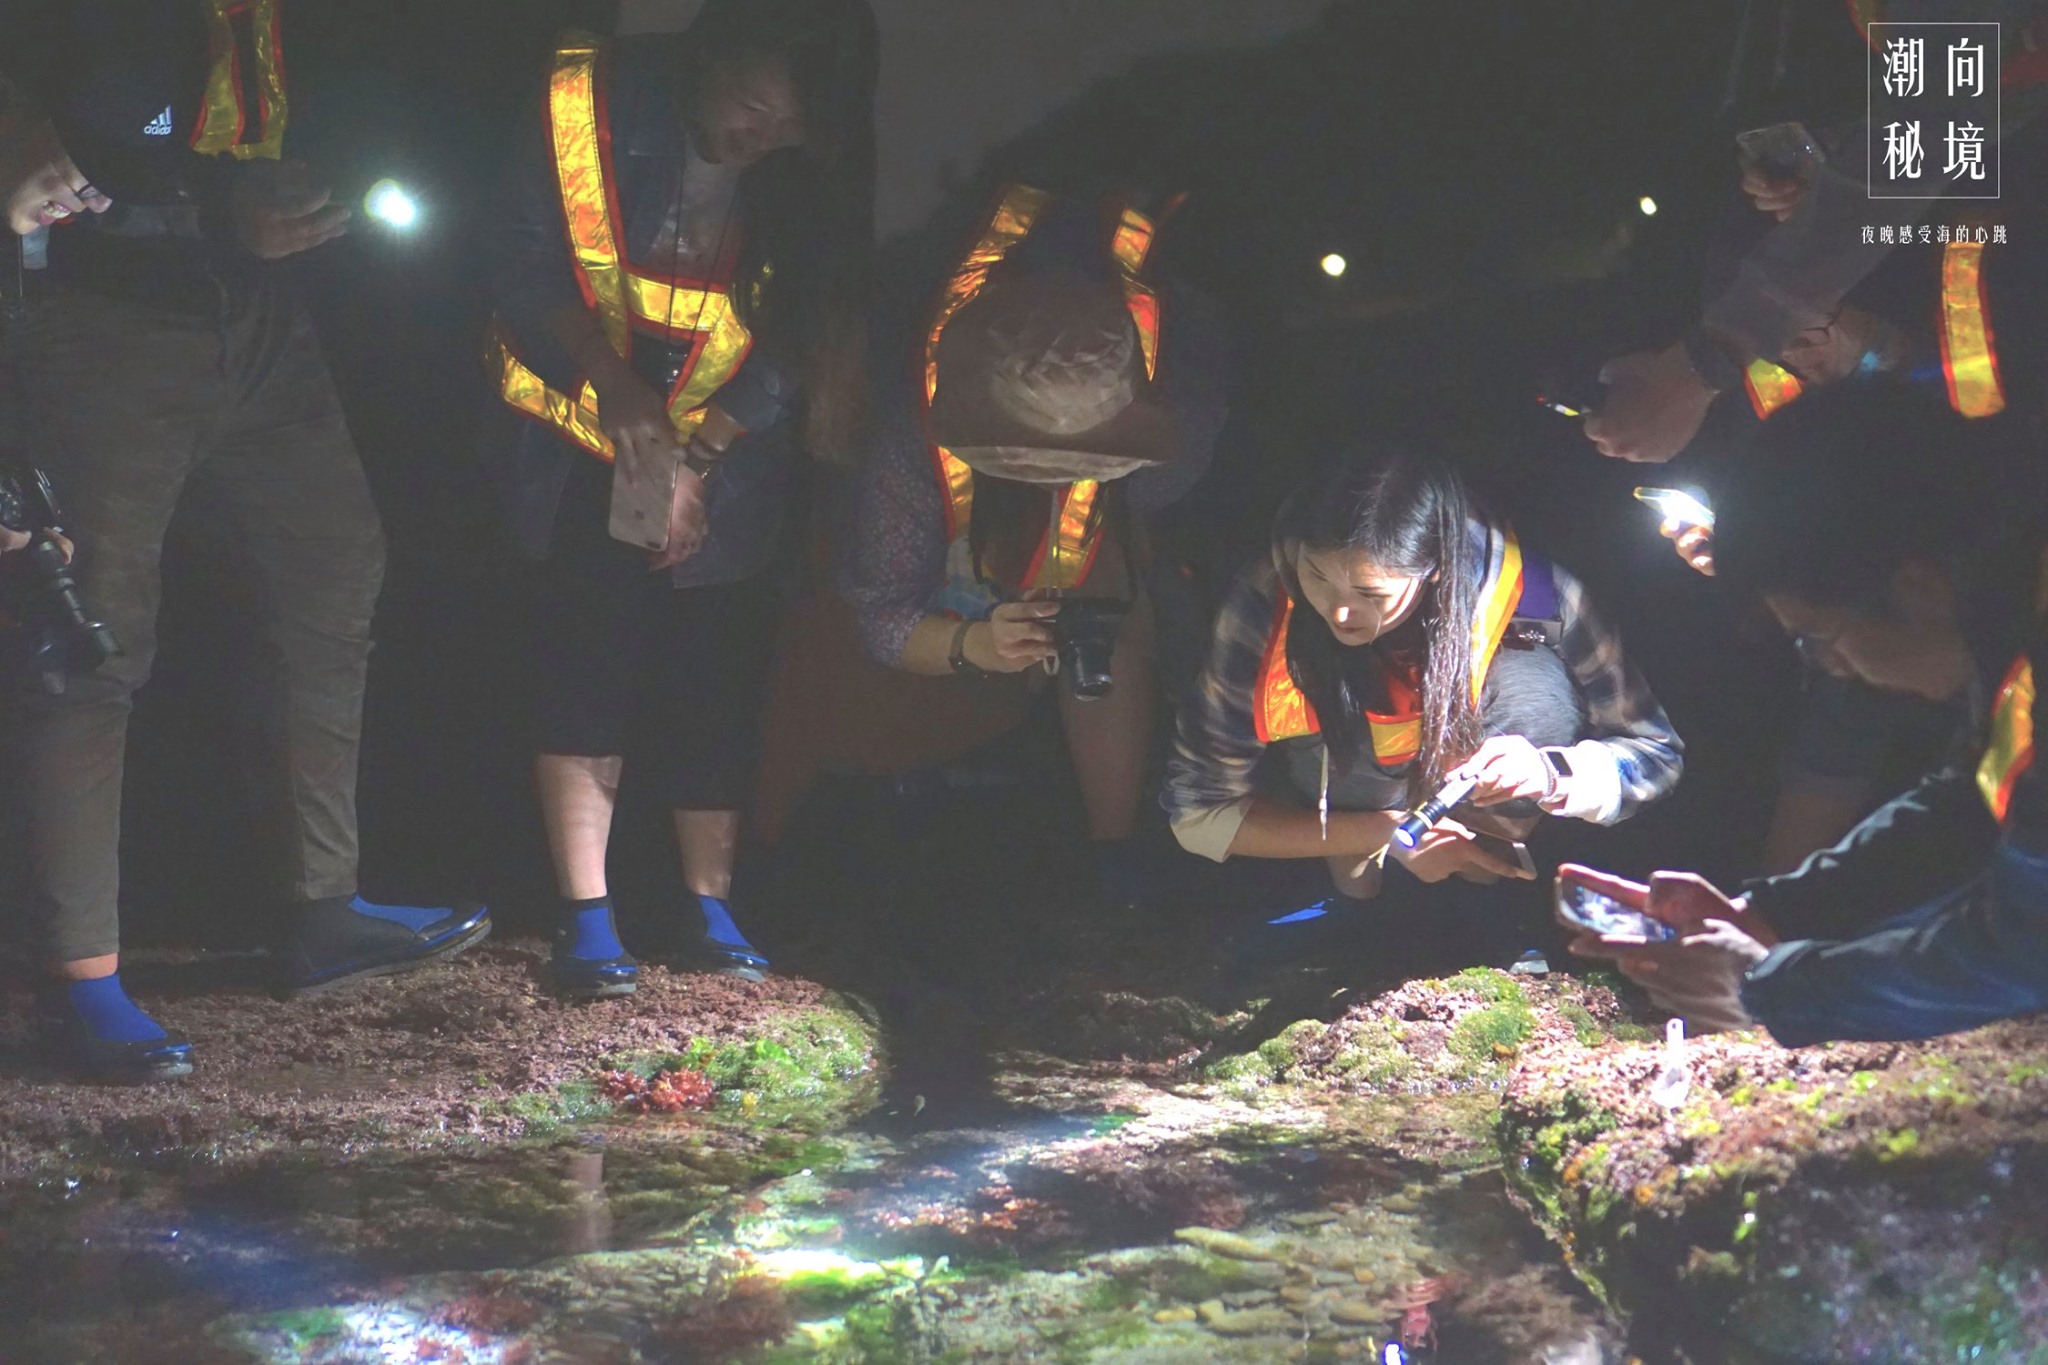 和平島公園與環境友善種子團隊合作夜間潮間帶環境教育課程